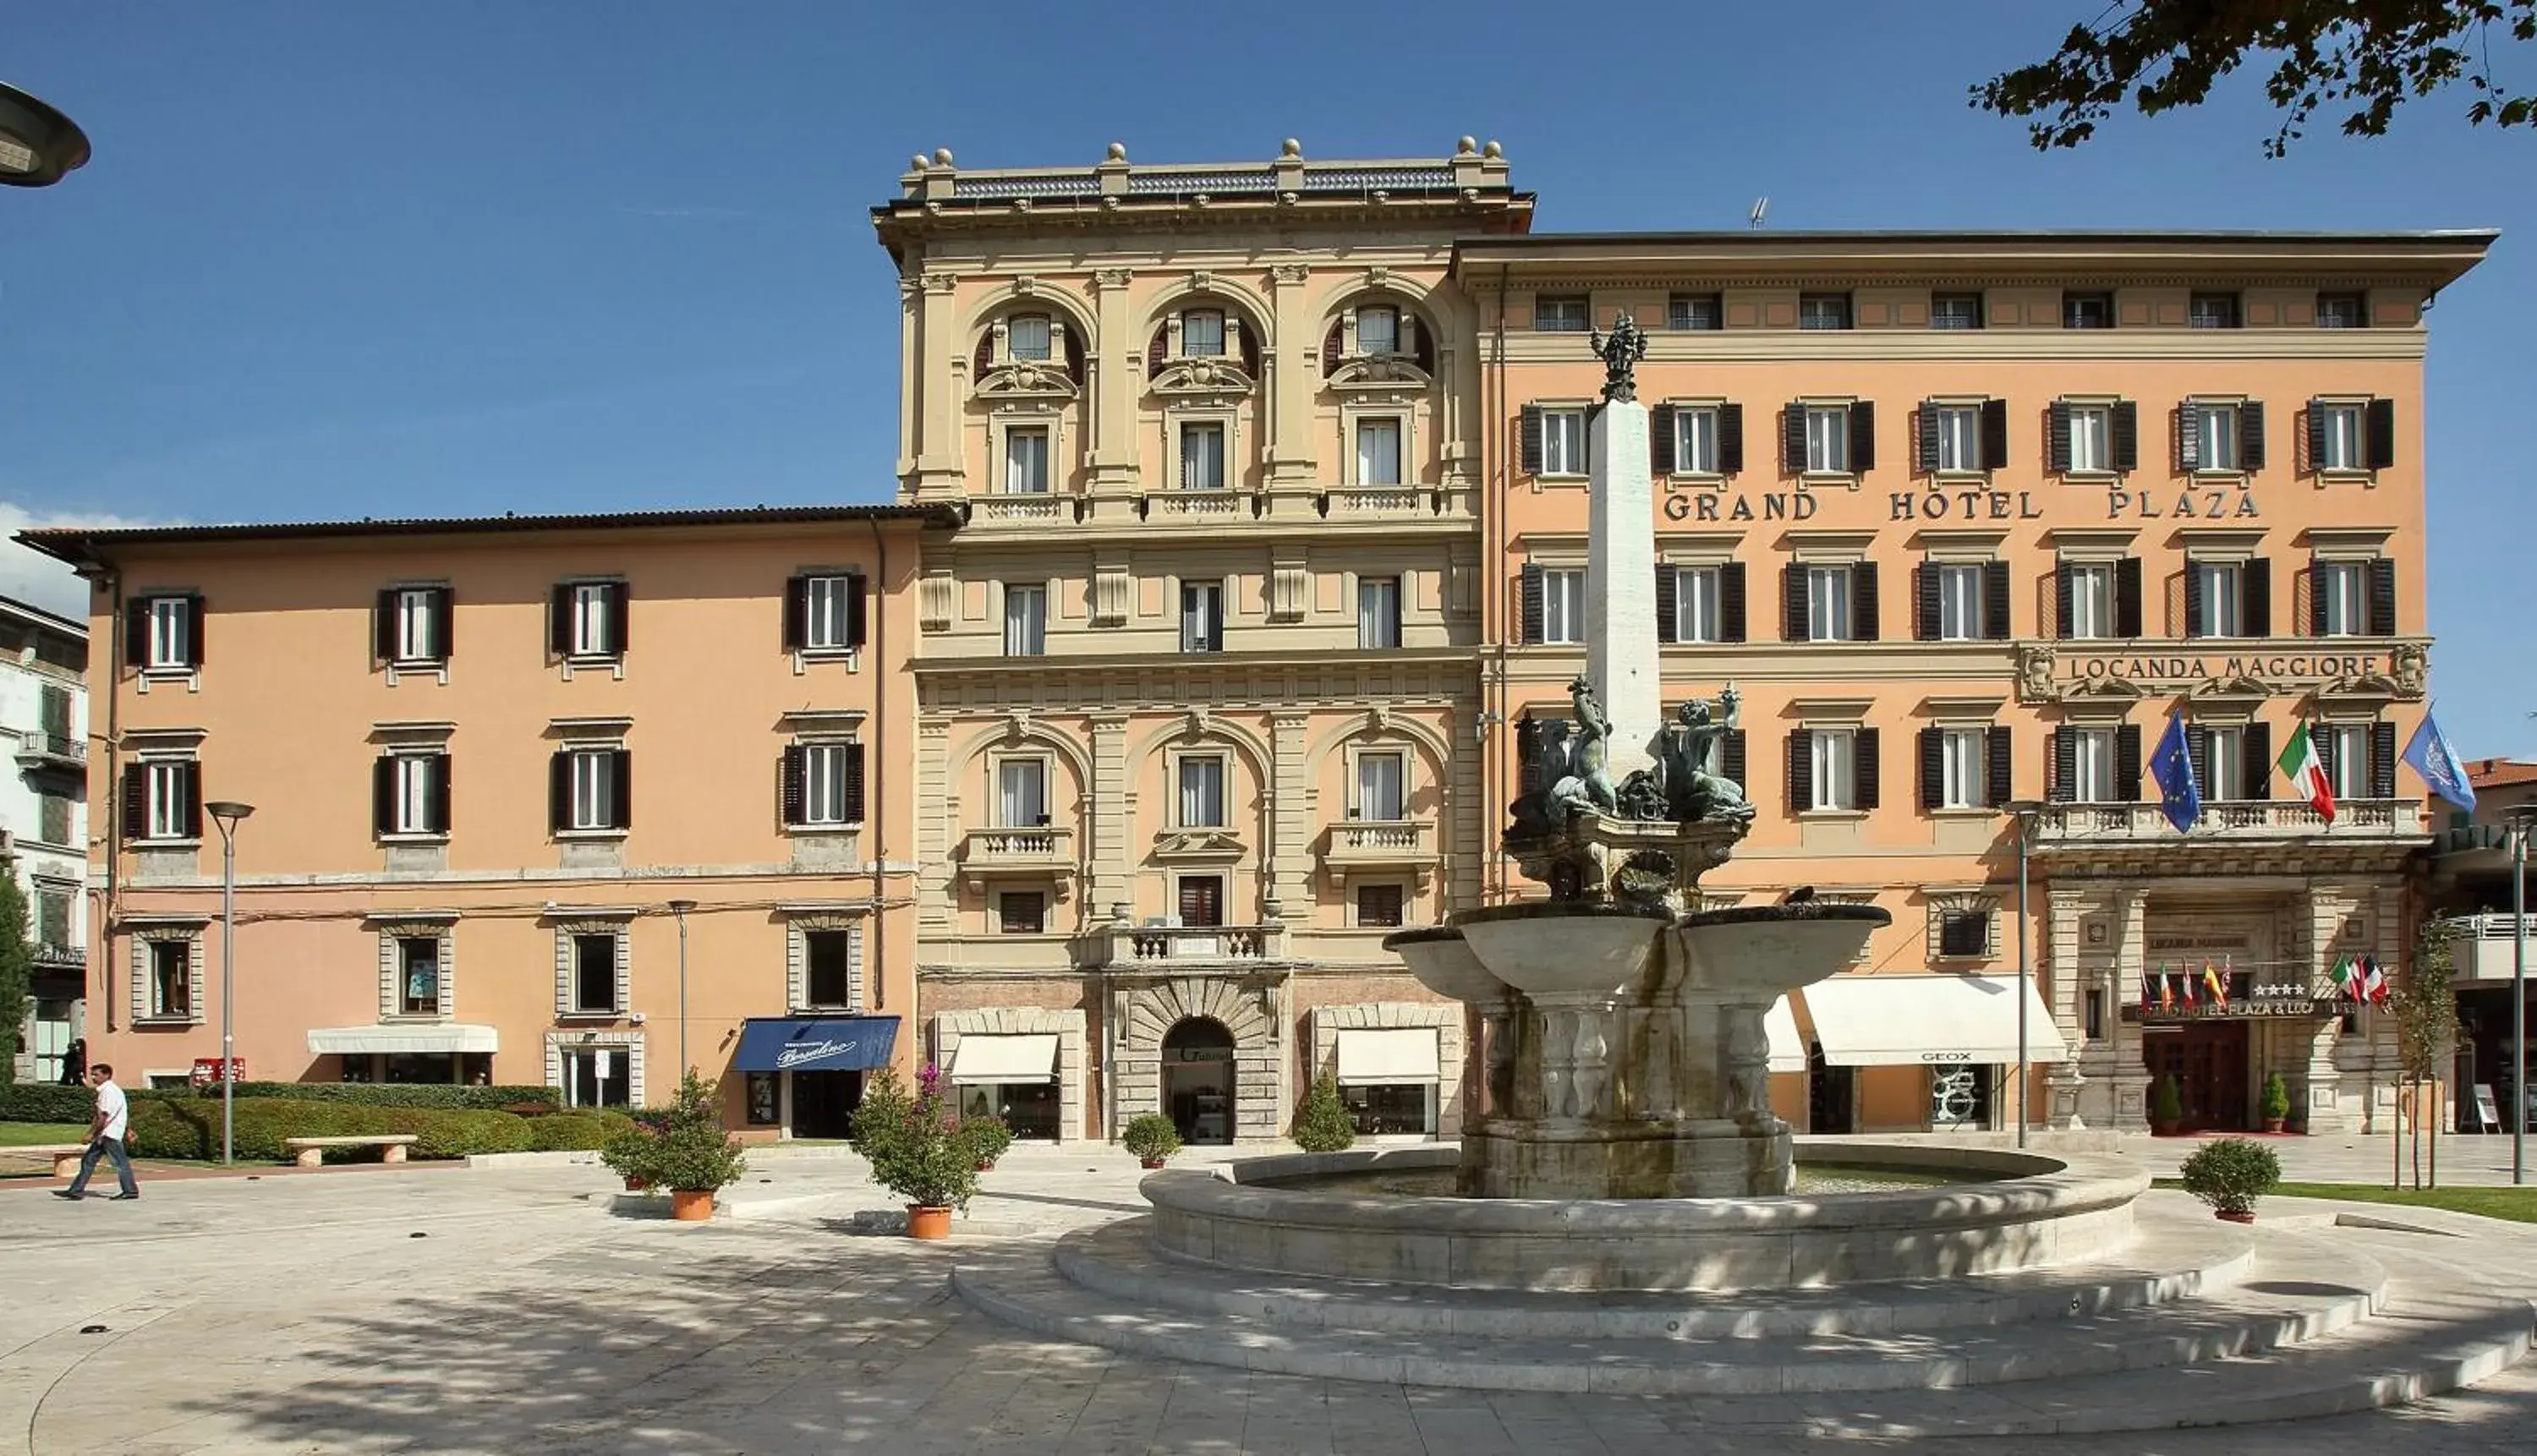 Facade/entrance, Property Building in Grand Hotel Plaza & Locanda Maggiore